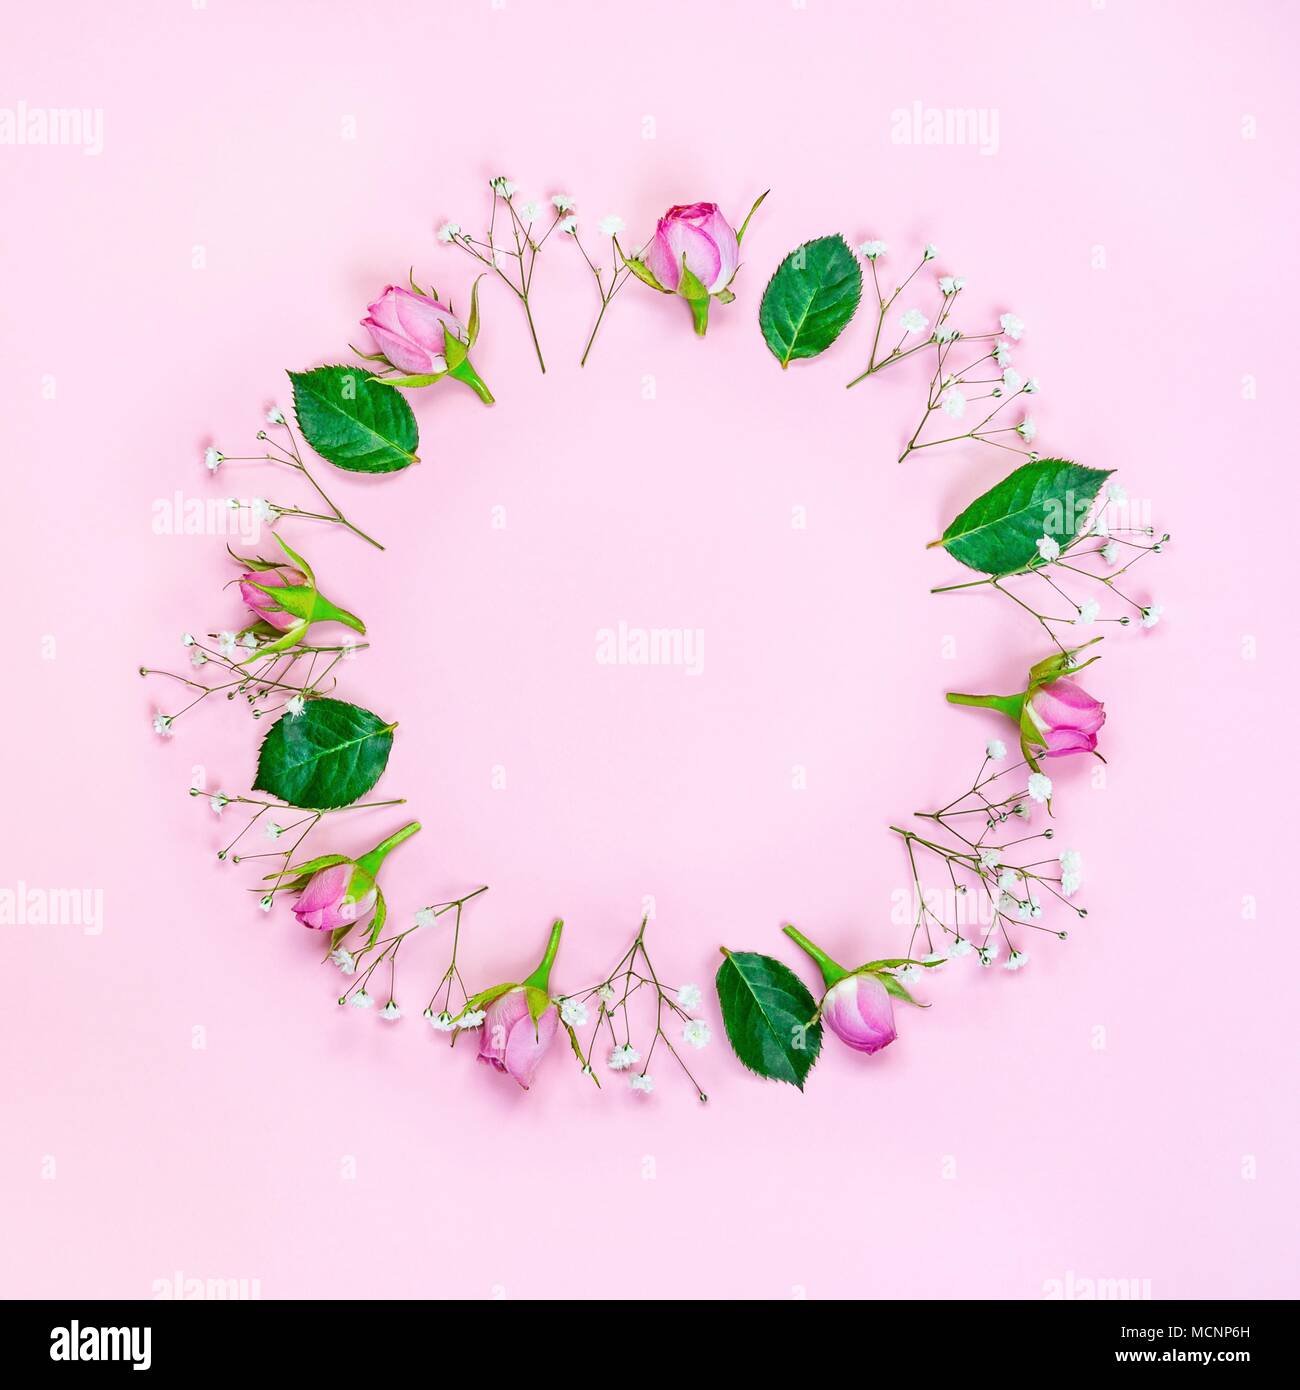 Vue de dessus de roses roses et couronne de feuilles vertes sur fond rose. Abstract floral background. Banque D'Images